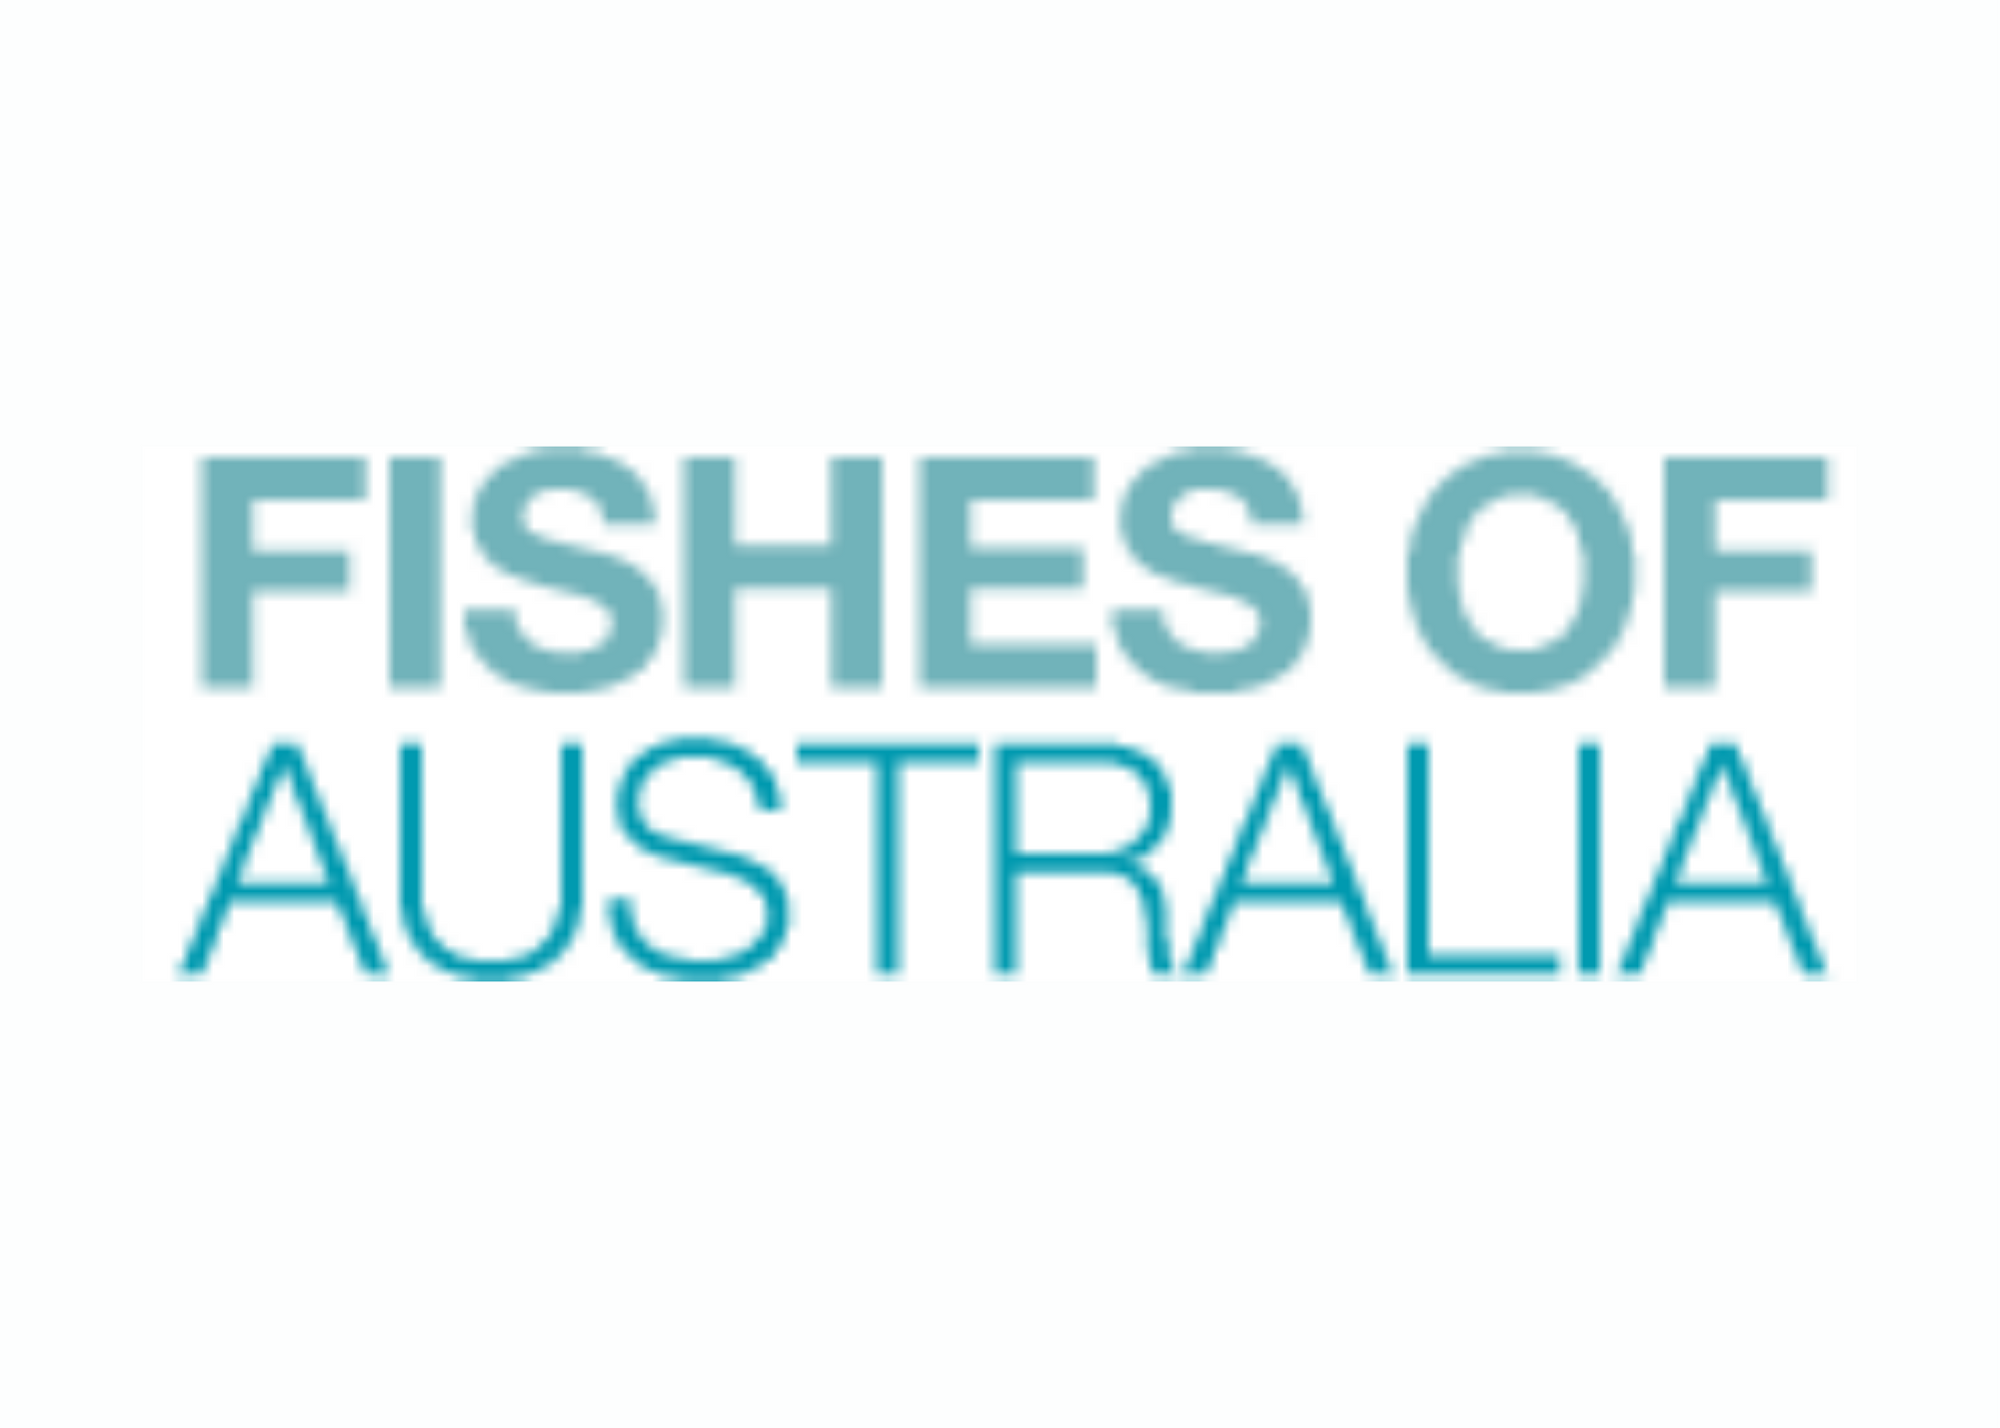 Catalogue of Australia's marine &amp; freshwater fishes.